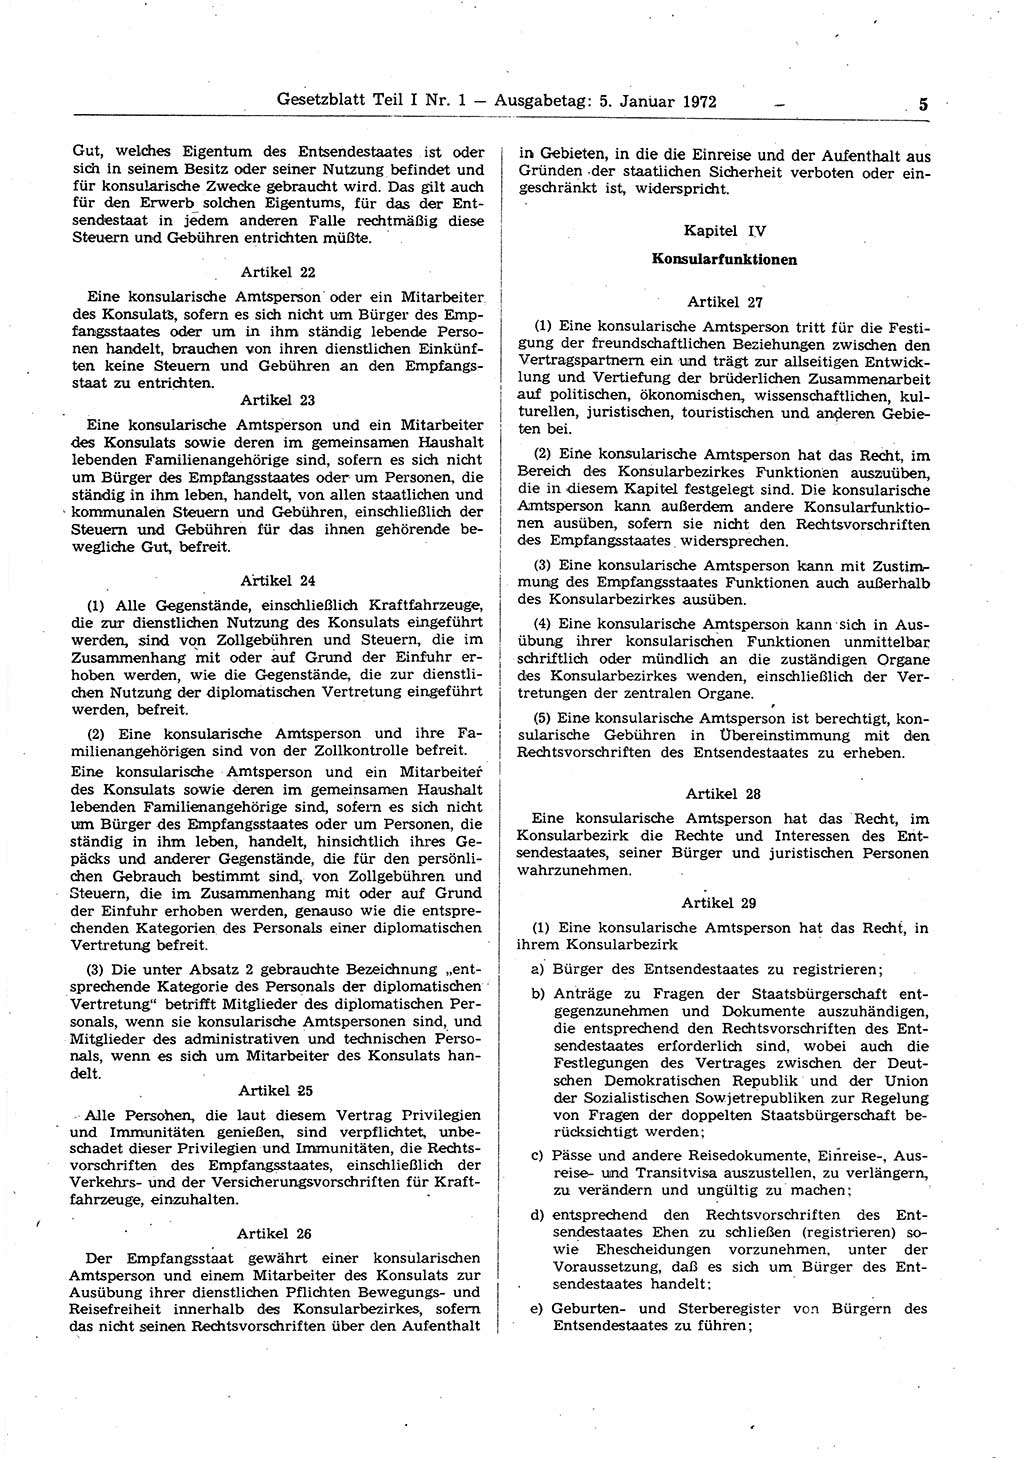 Gesetzblatt (GBl.) der Deutschen Demokratischen Republik (DDR) Teil Ⅰ 1972, Seite 5 (GBl. DDR Ⅰ 1972, S. 5)